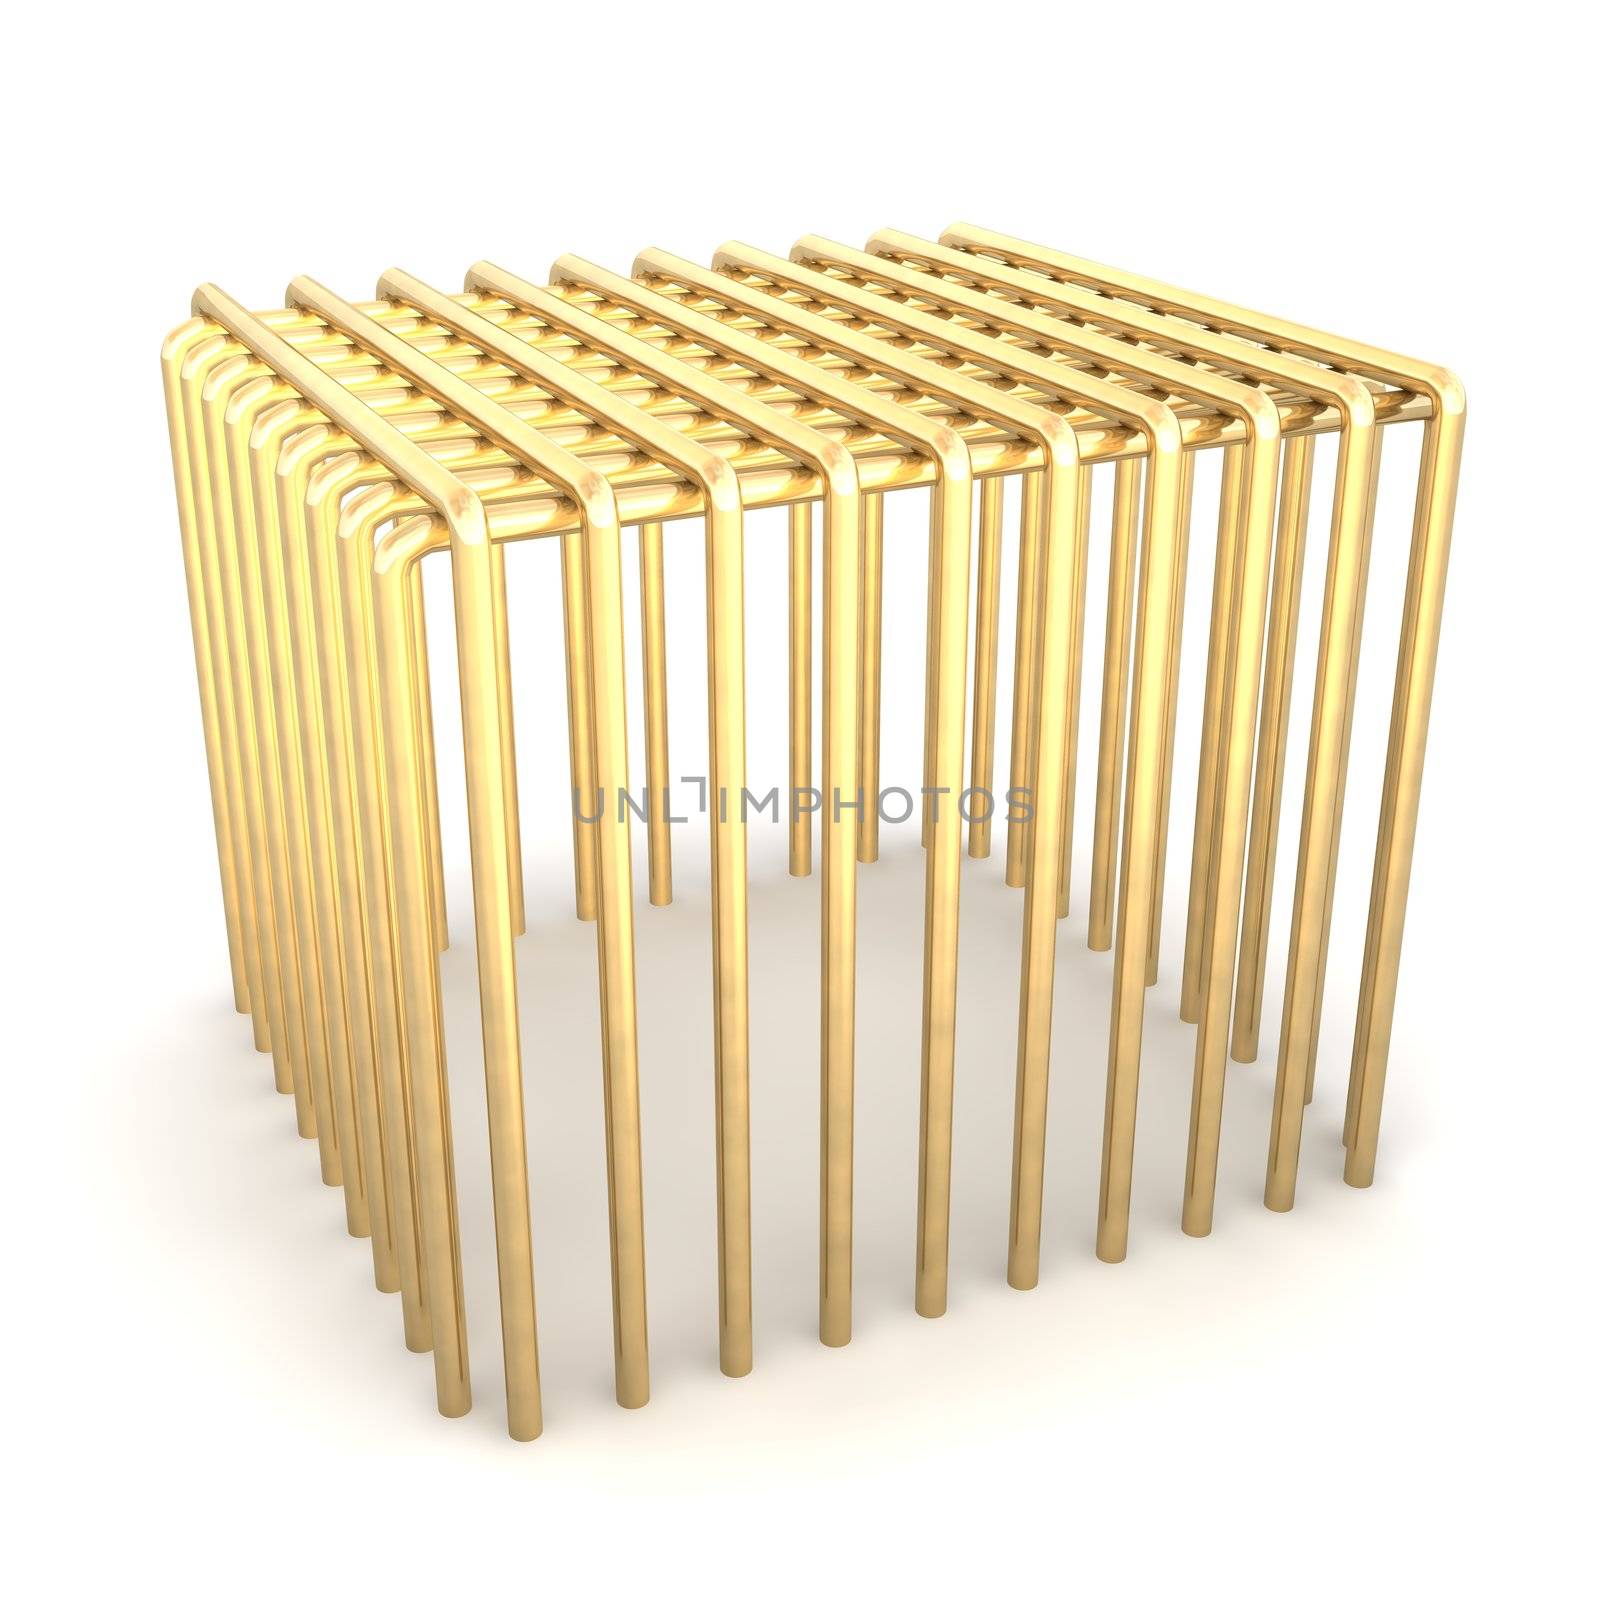 Golden cage. 3d rendered illustration.